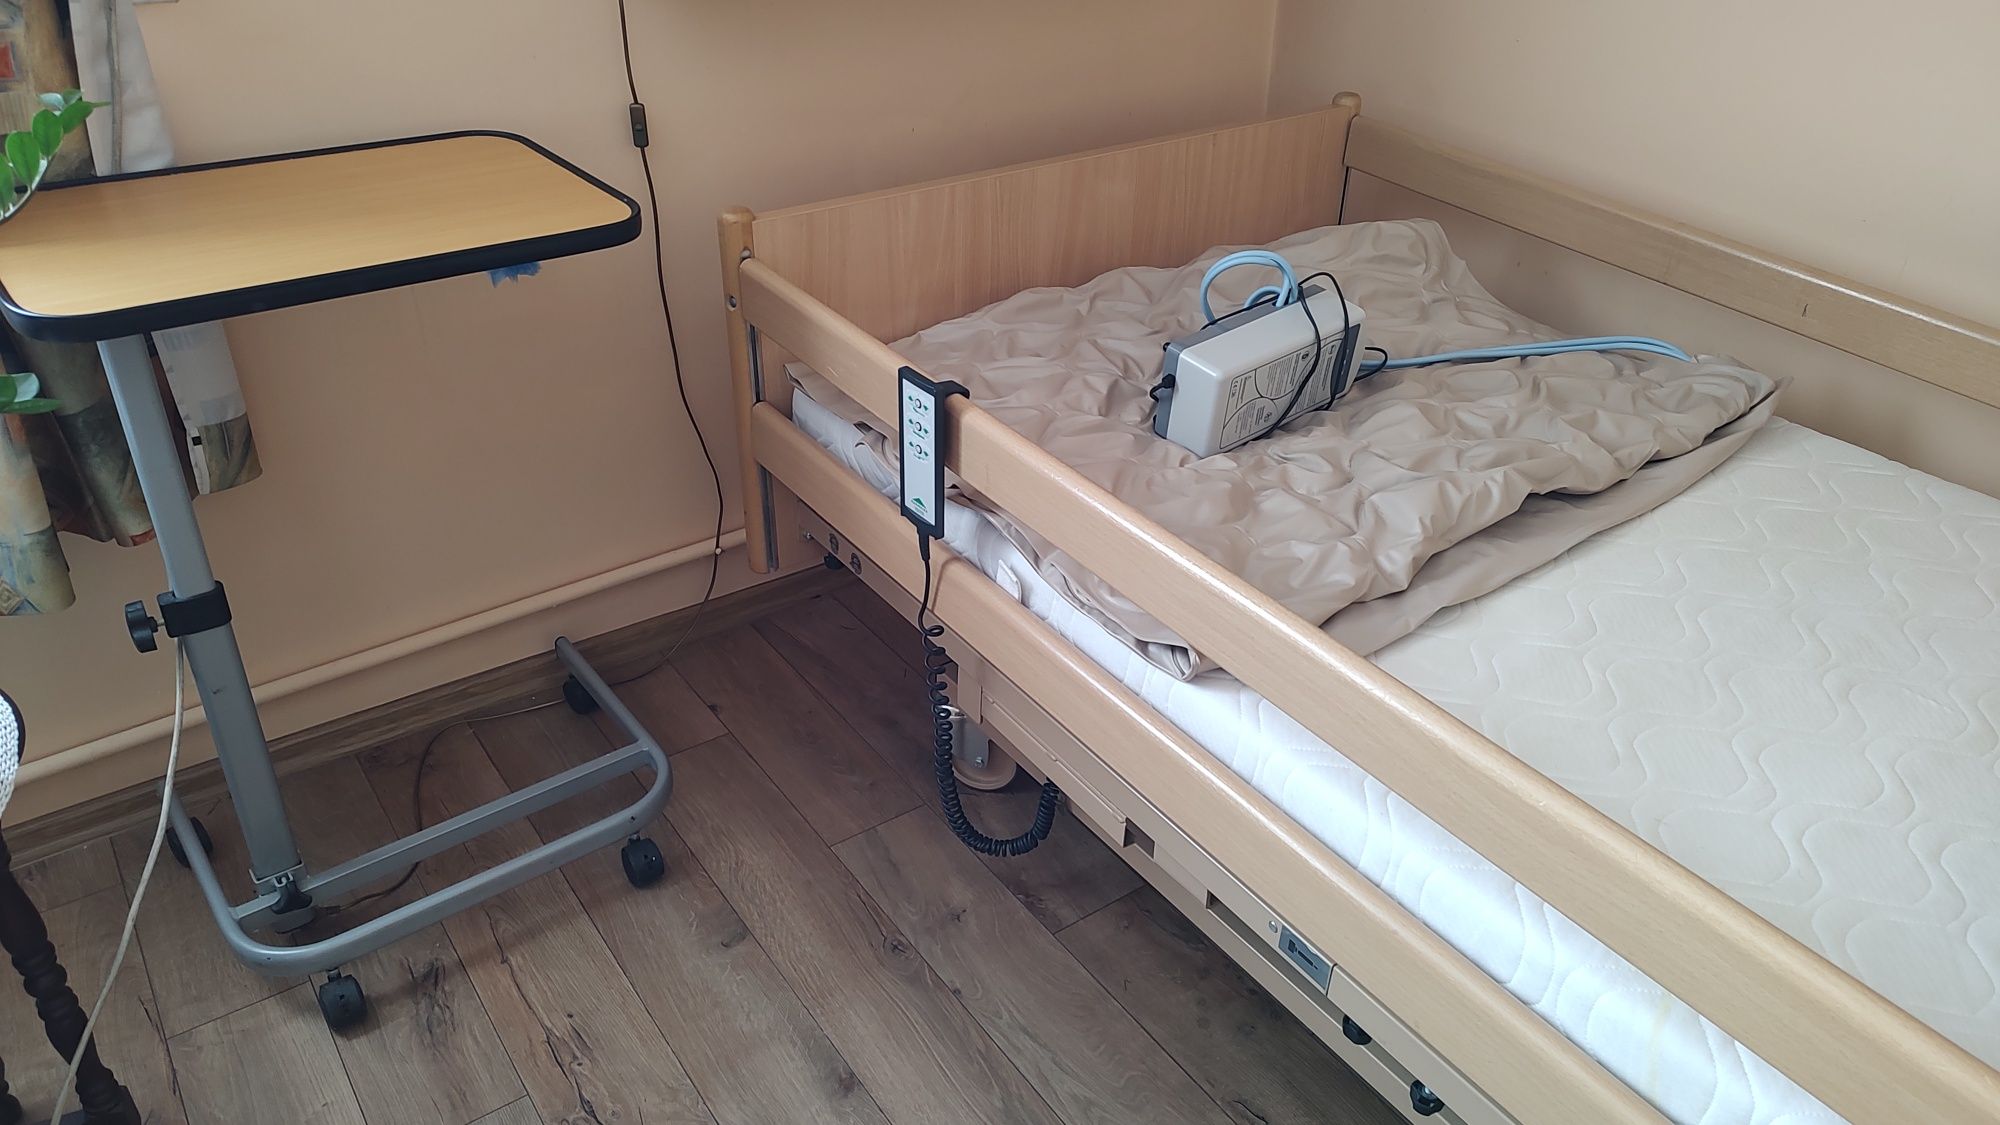 Łóżko rehabilitacyjne solidne elektryczne z regulacja